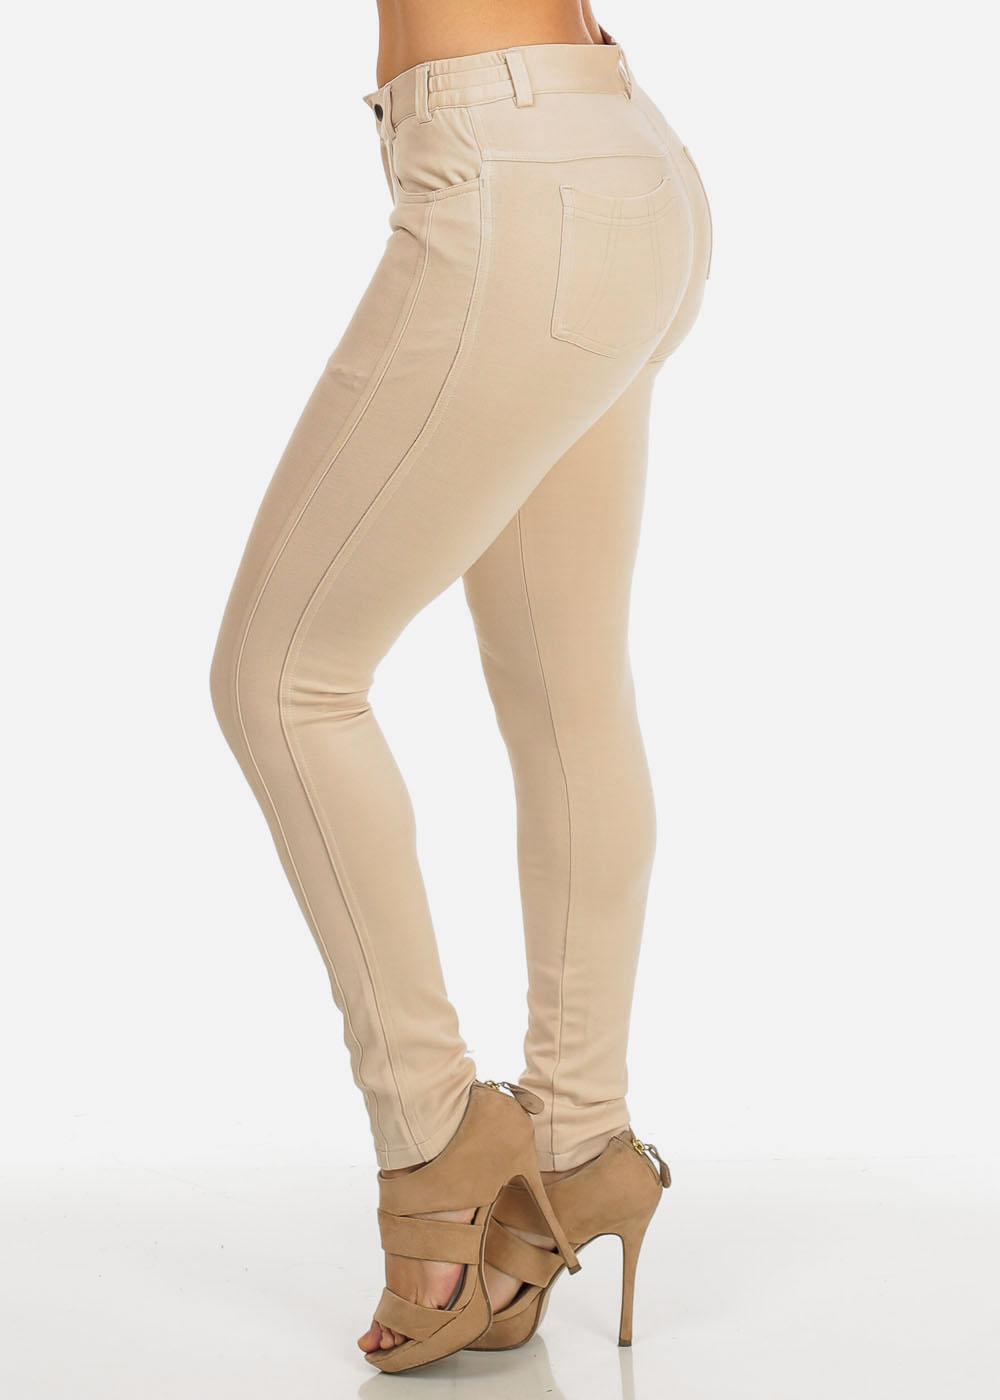 khaki pants for women womens juniors khaki low rise solid skinny moleton pants 10624v KCLSRSU